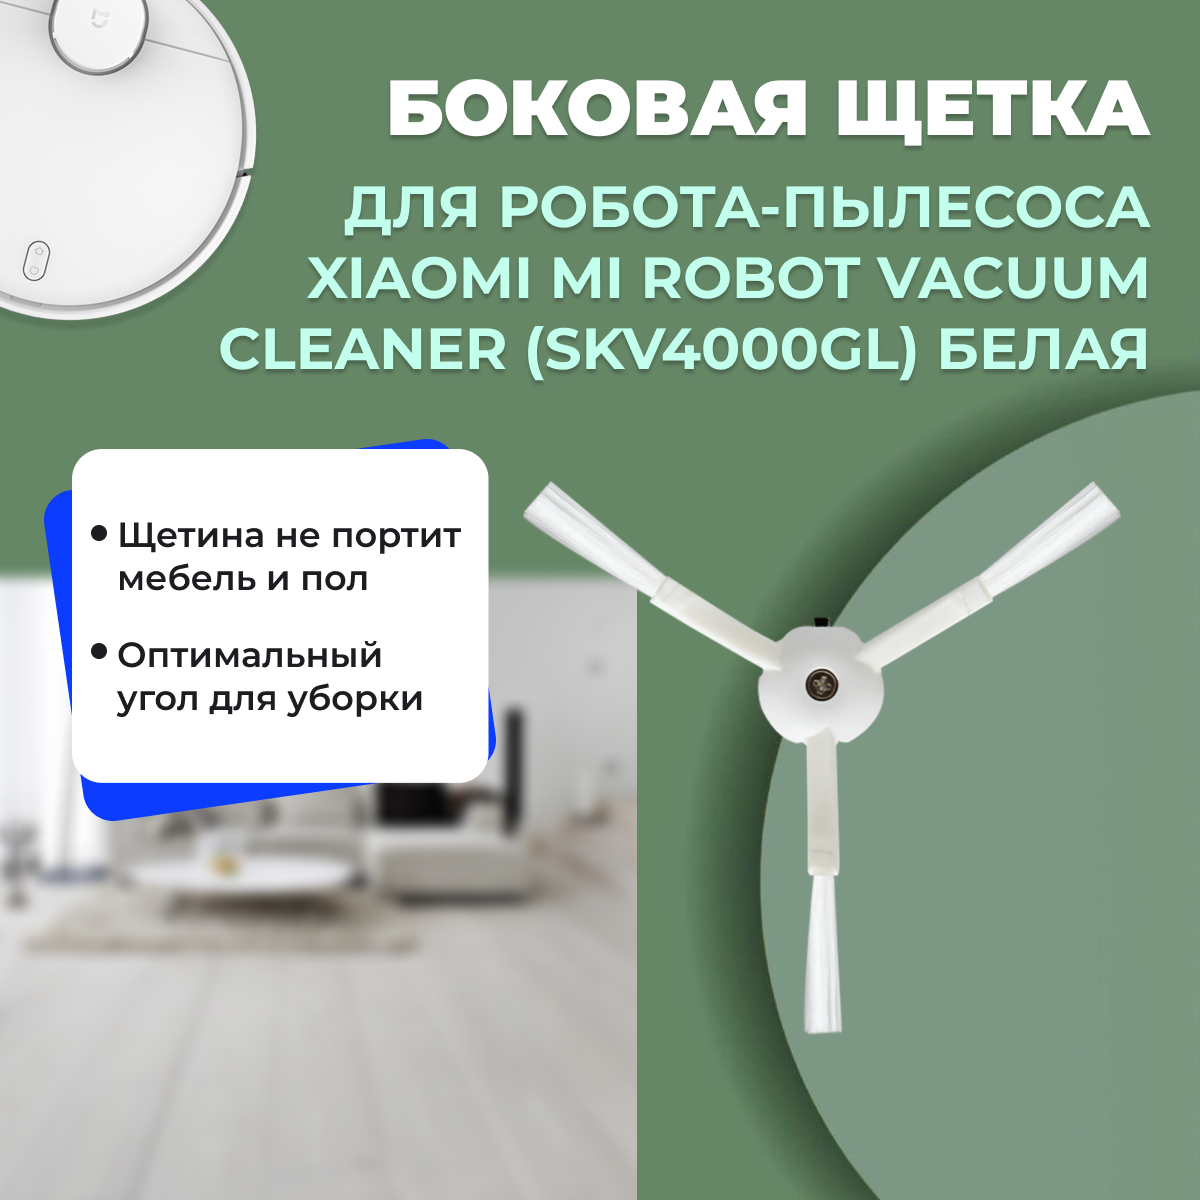 Боковая щетка для робота-пылесоса Xiaomi Mi Robot Vacuum Cleaner (SKV4000GL), белая 558548, фото 1